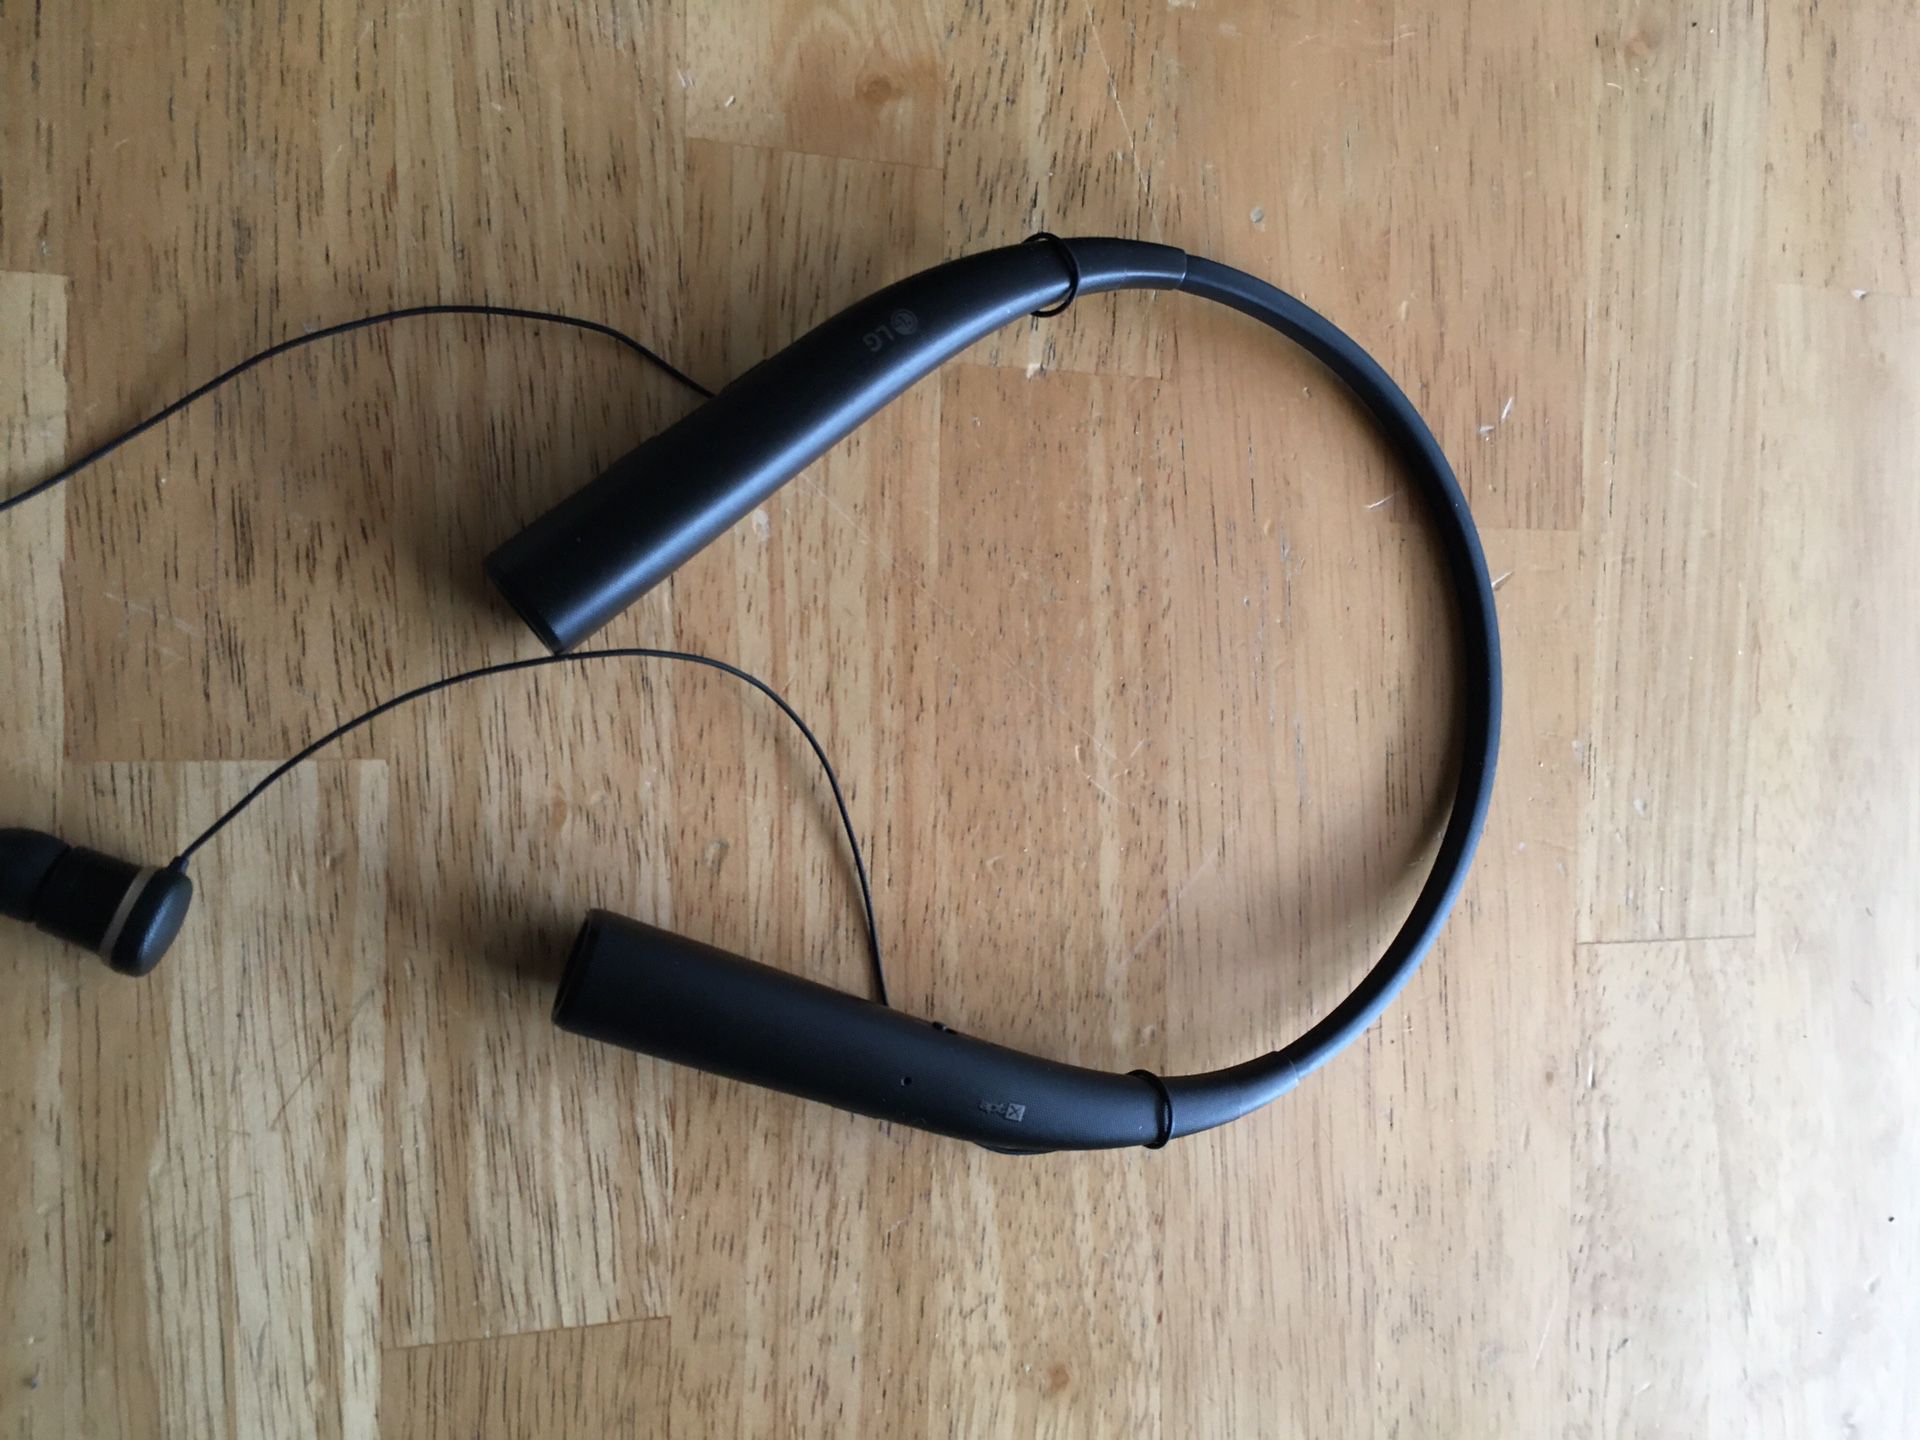 LG Bluetooth headphones